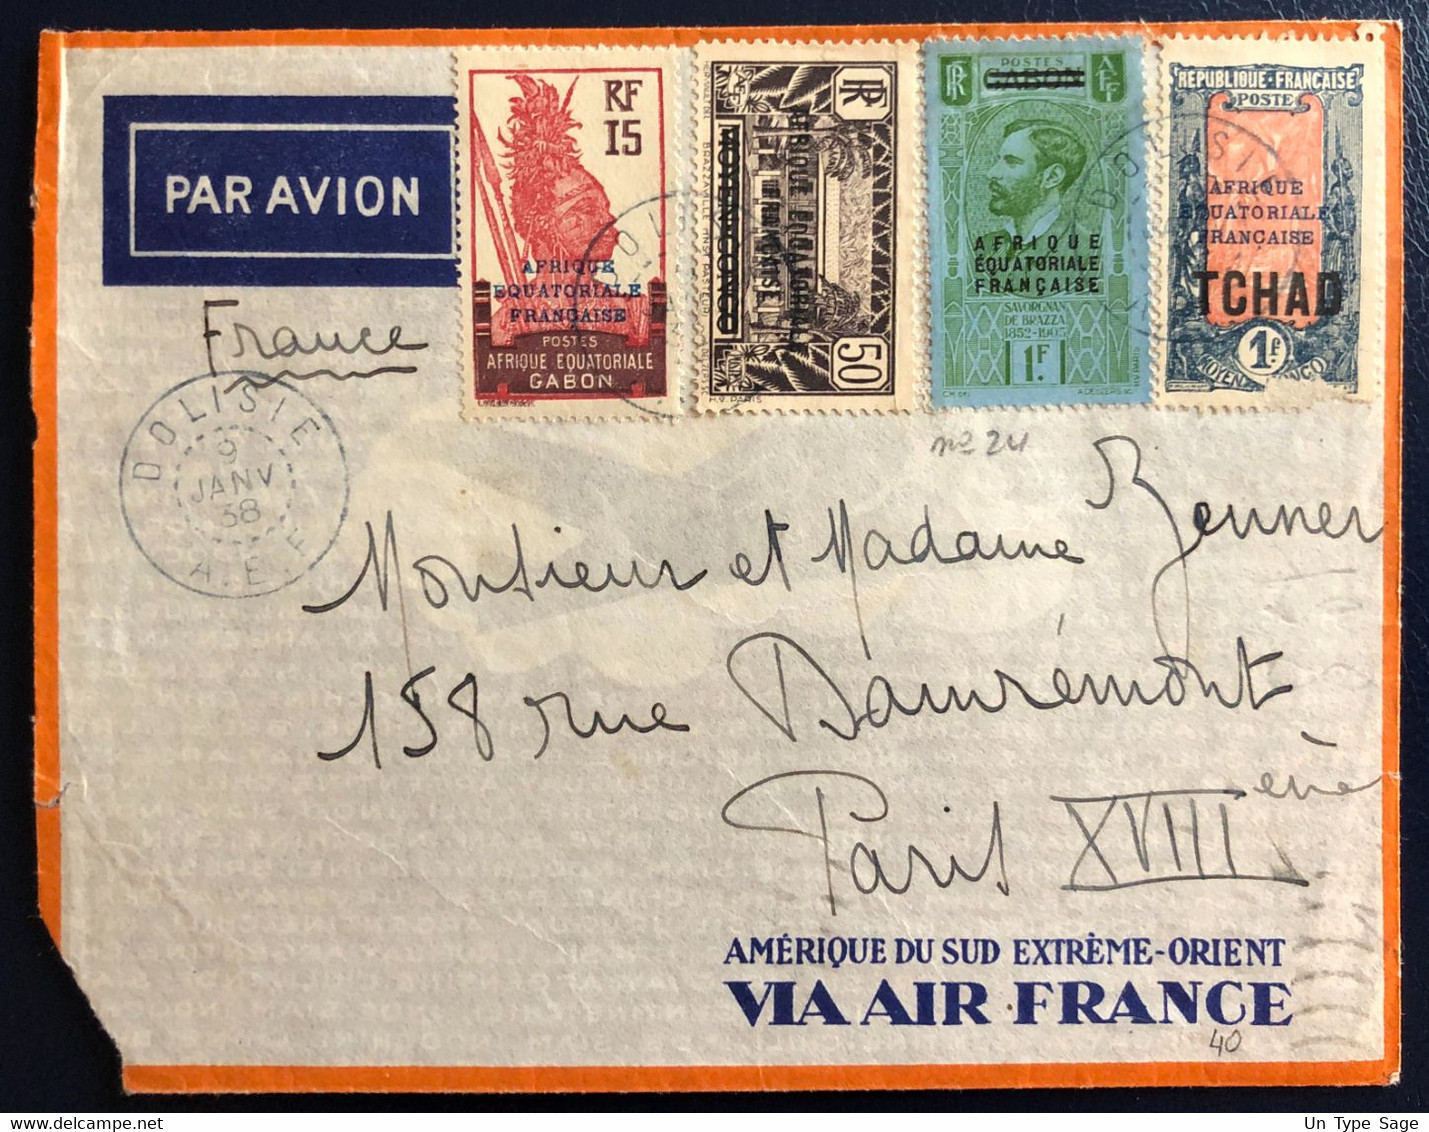 A.E.F. Divers (dont TCHAD) Sur Enveloppe TAD DOLISIE 9.1.1938 Pour La France - (B4555) - Covers & Documents